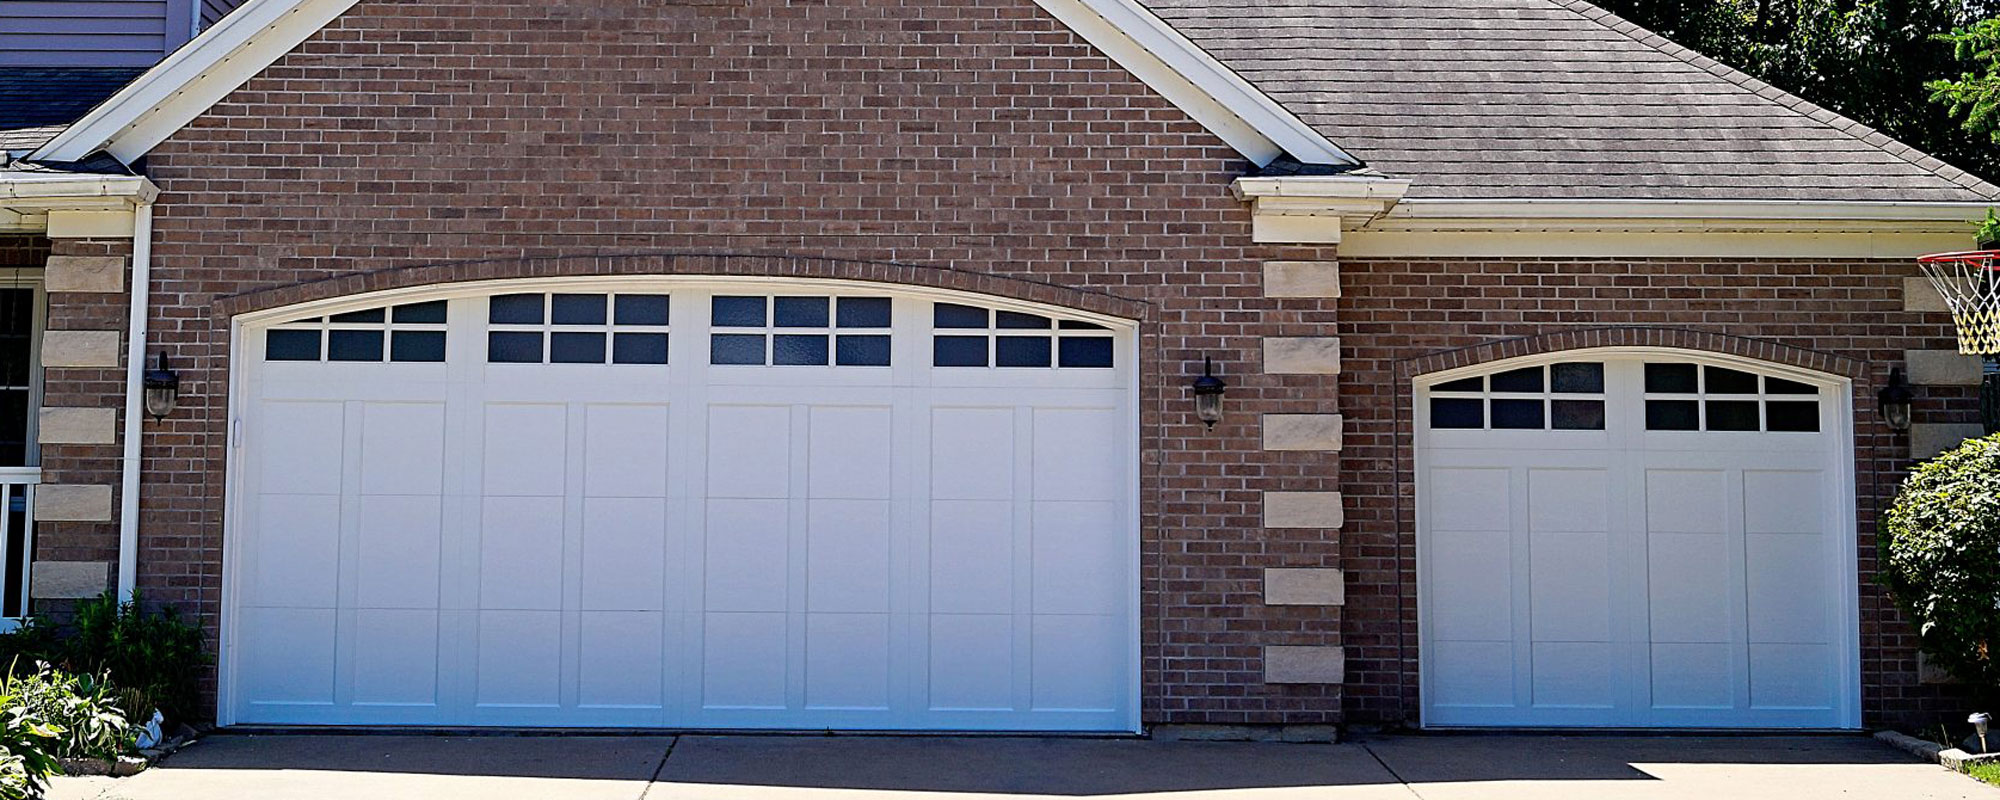 Residential Garage Doors Barron, Quality Garage Door Repair Davenport Ia